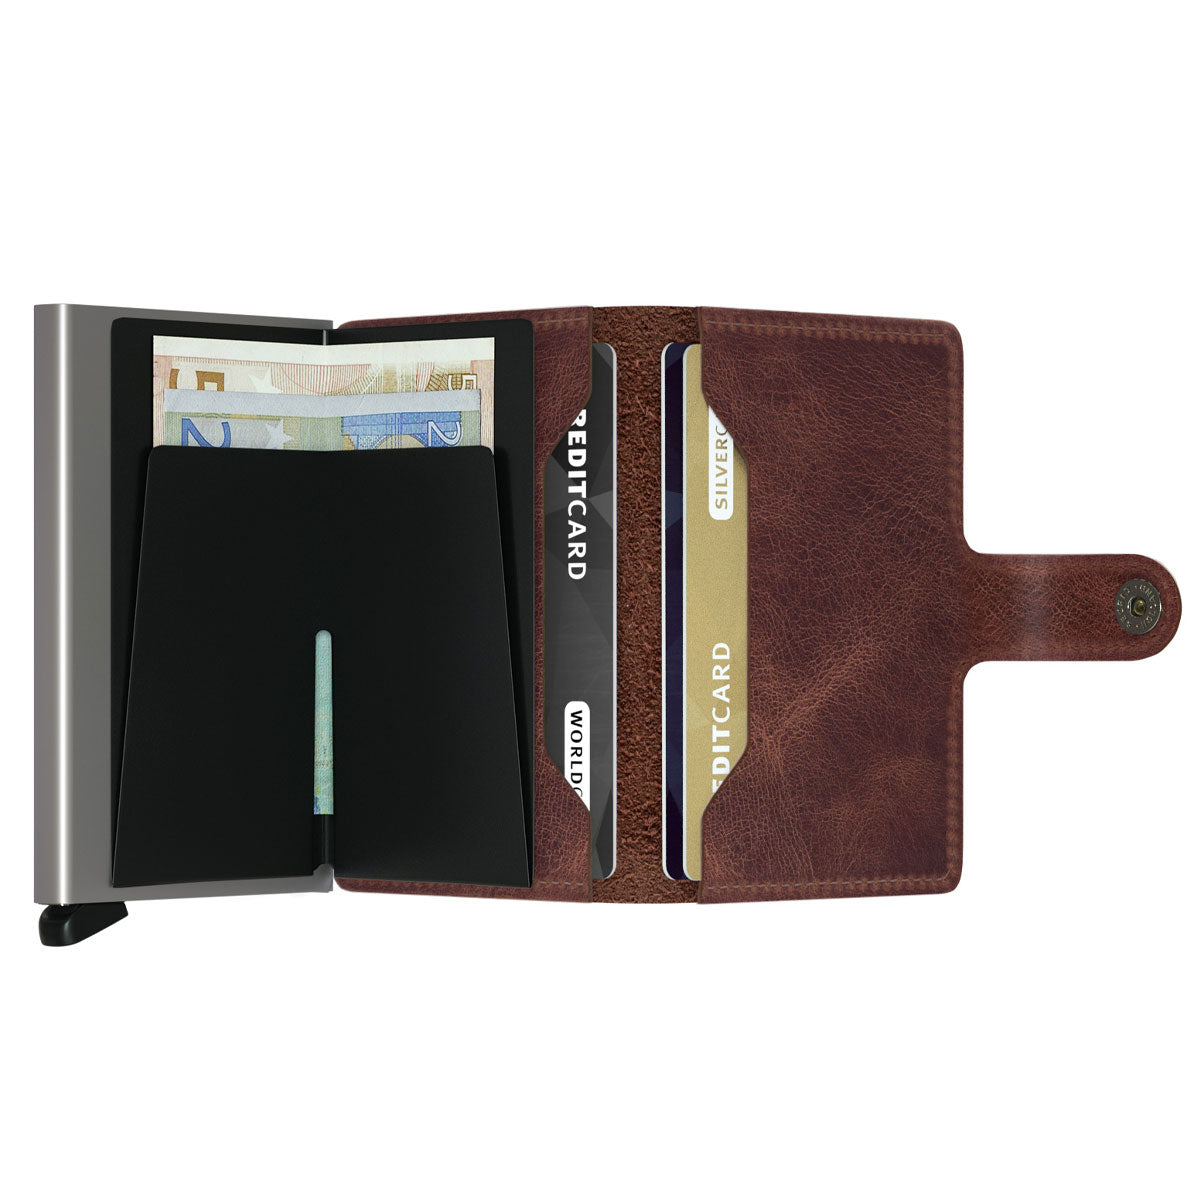 Secrid Mini Wallet Vintage Brown